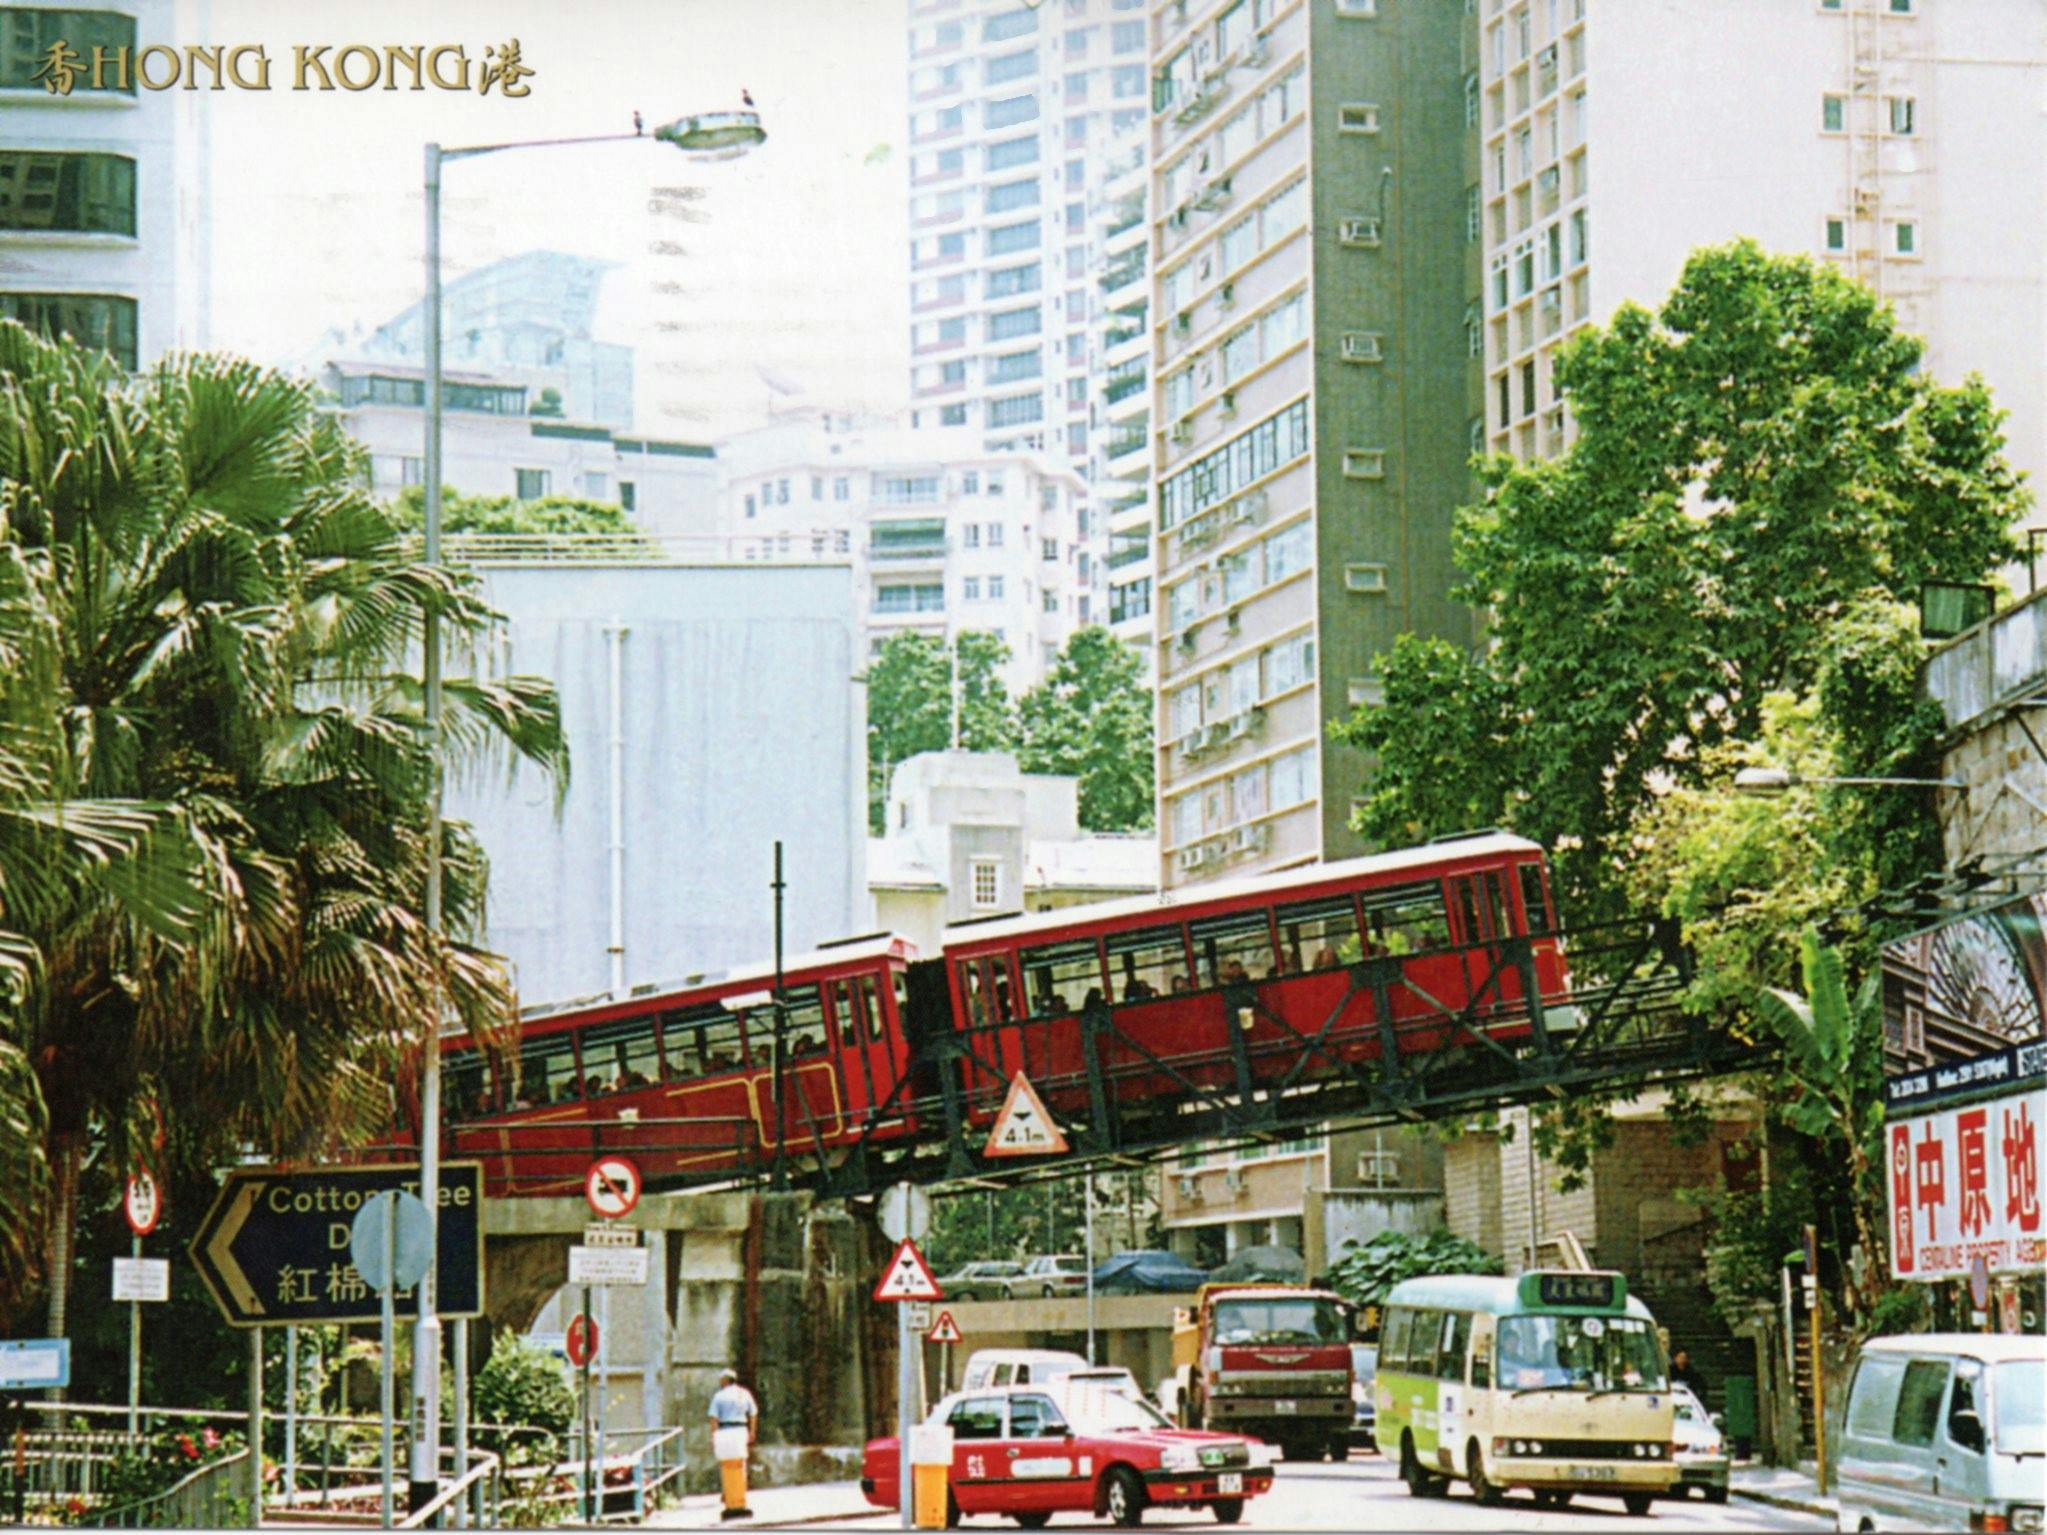 Hong Kong card front 1